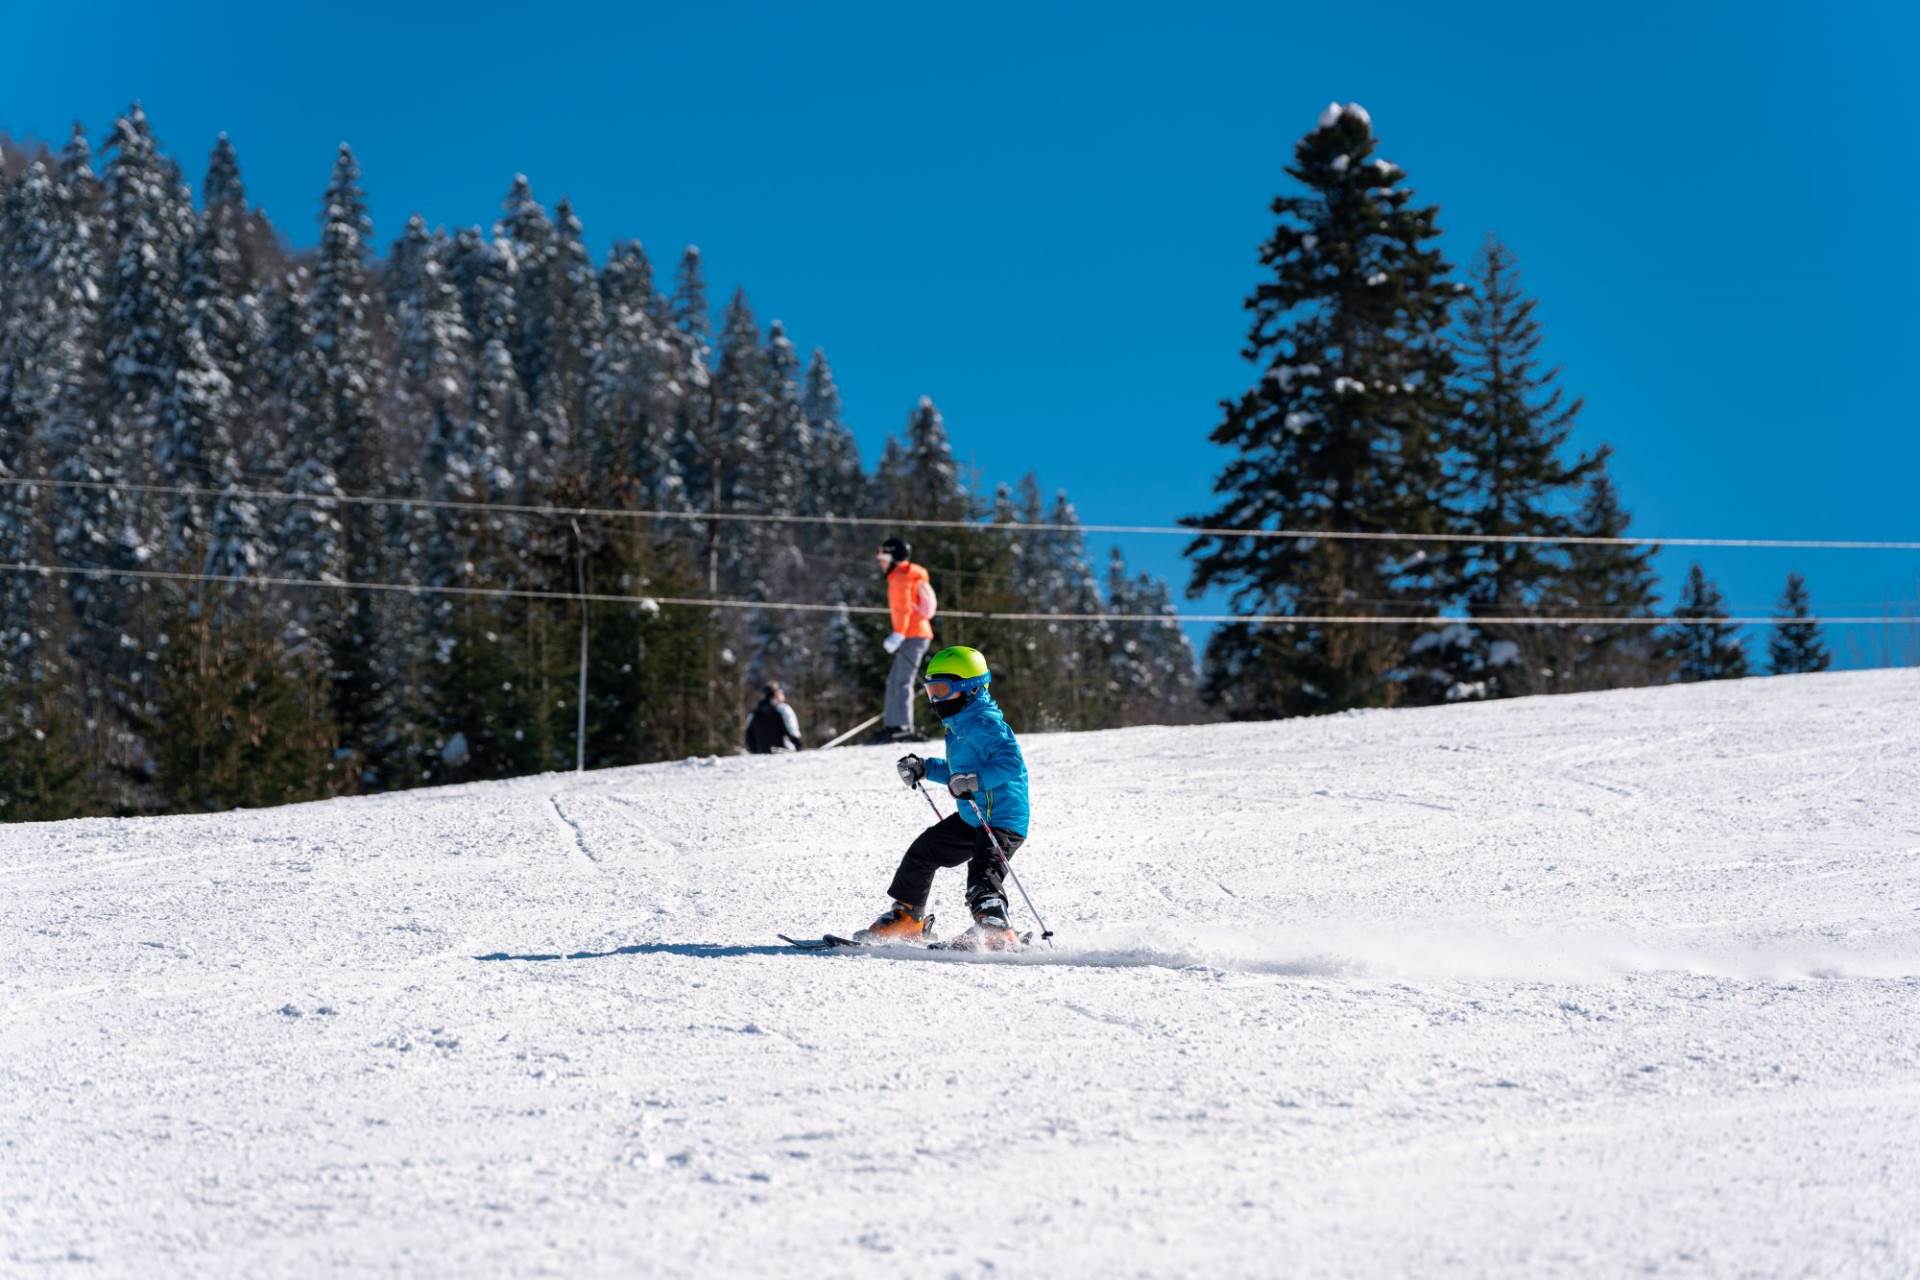  esplatno skijanje za građane Kolašina, Andrijevice, Berana i Petnjice 